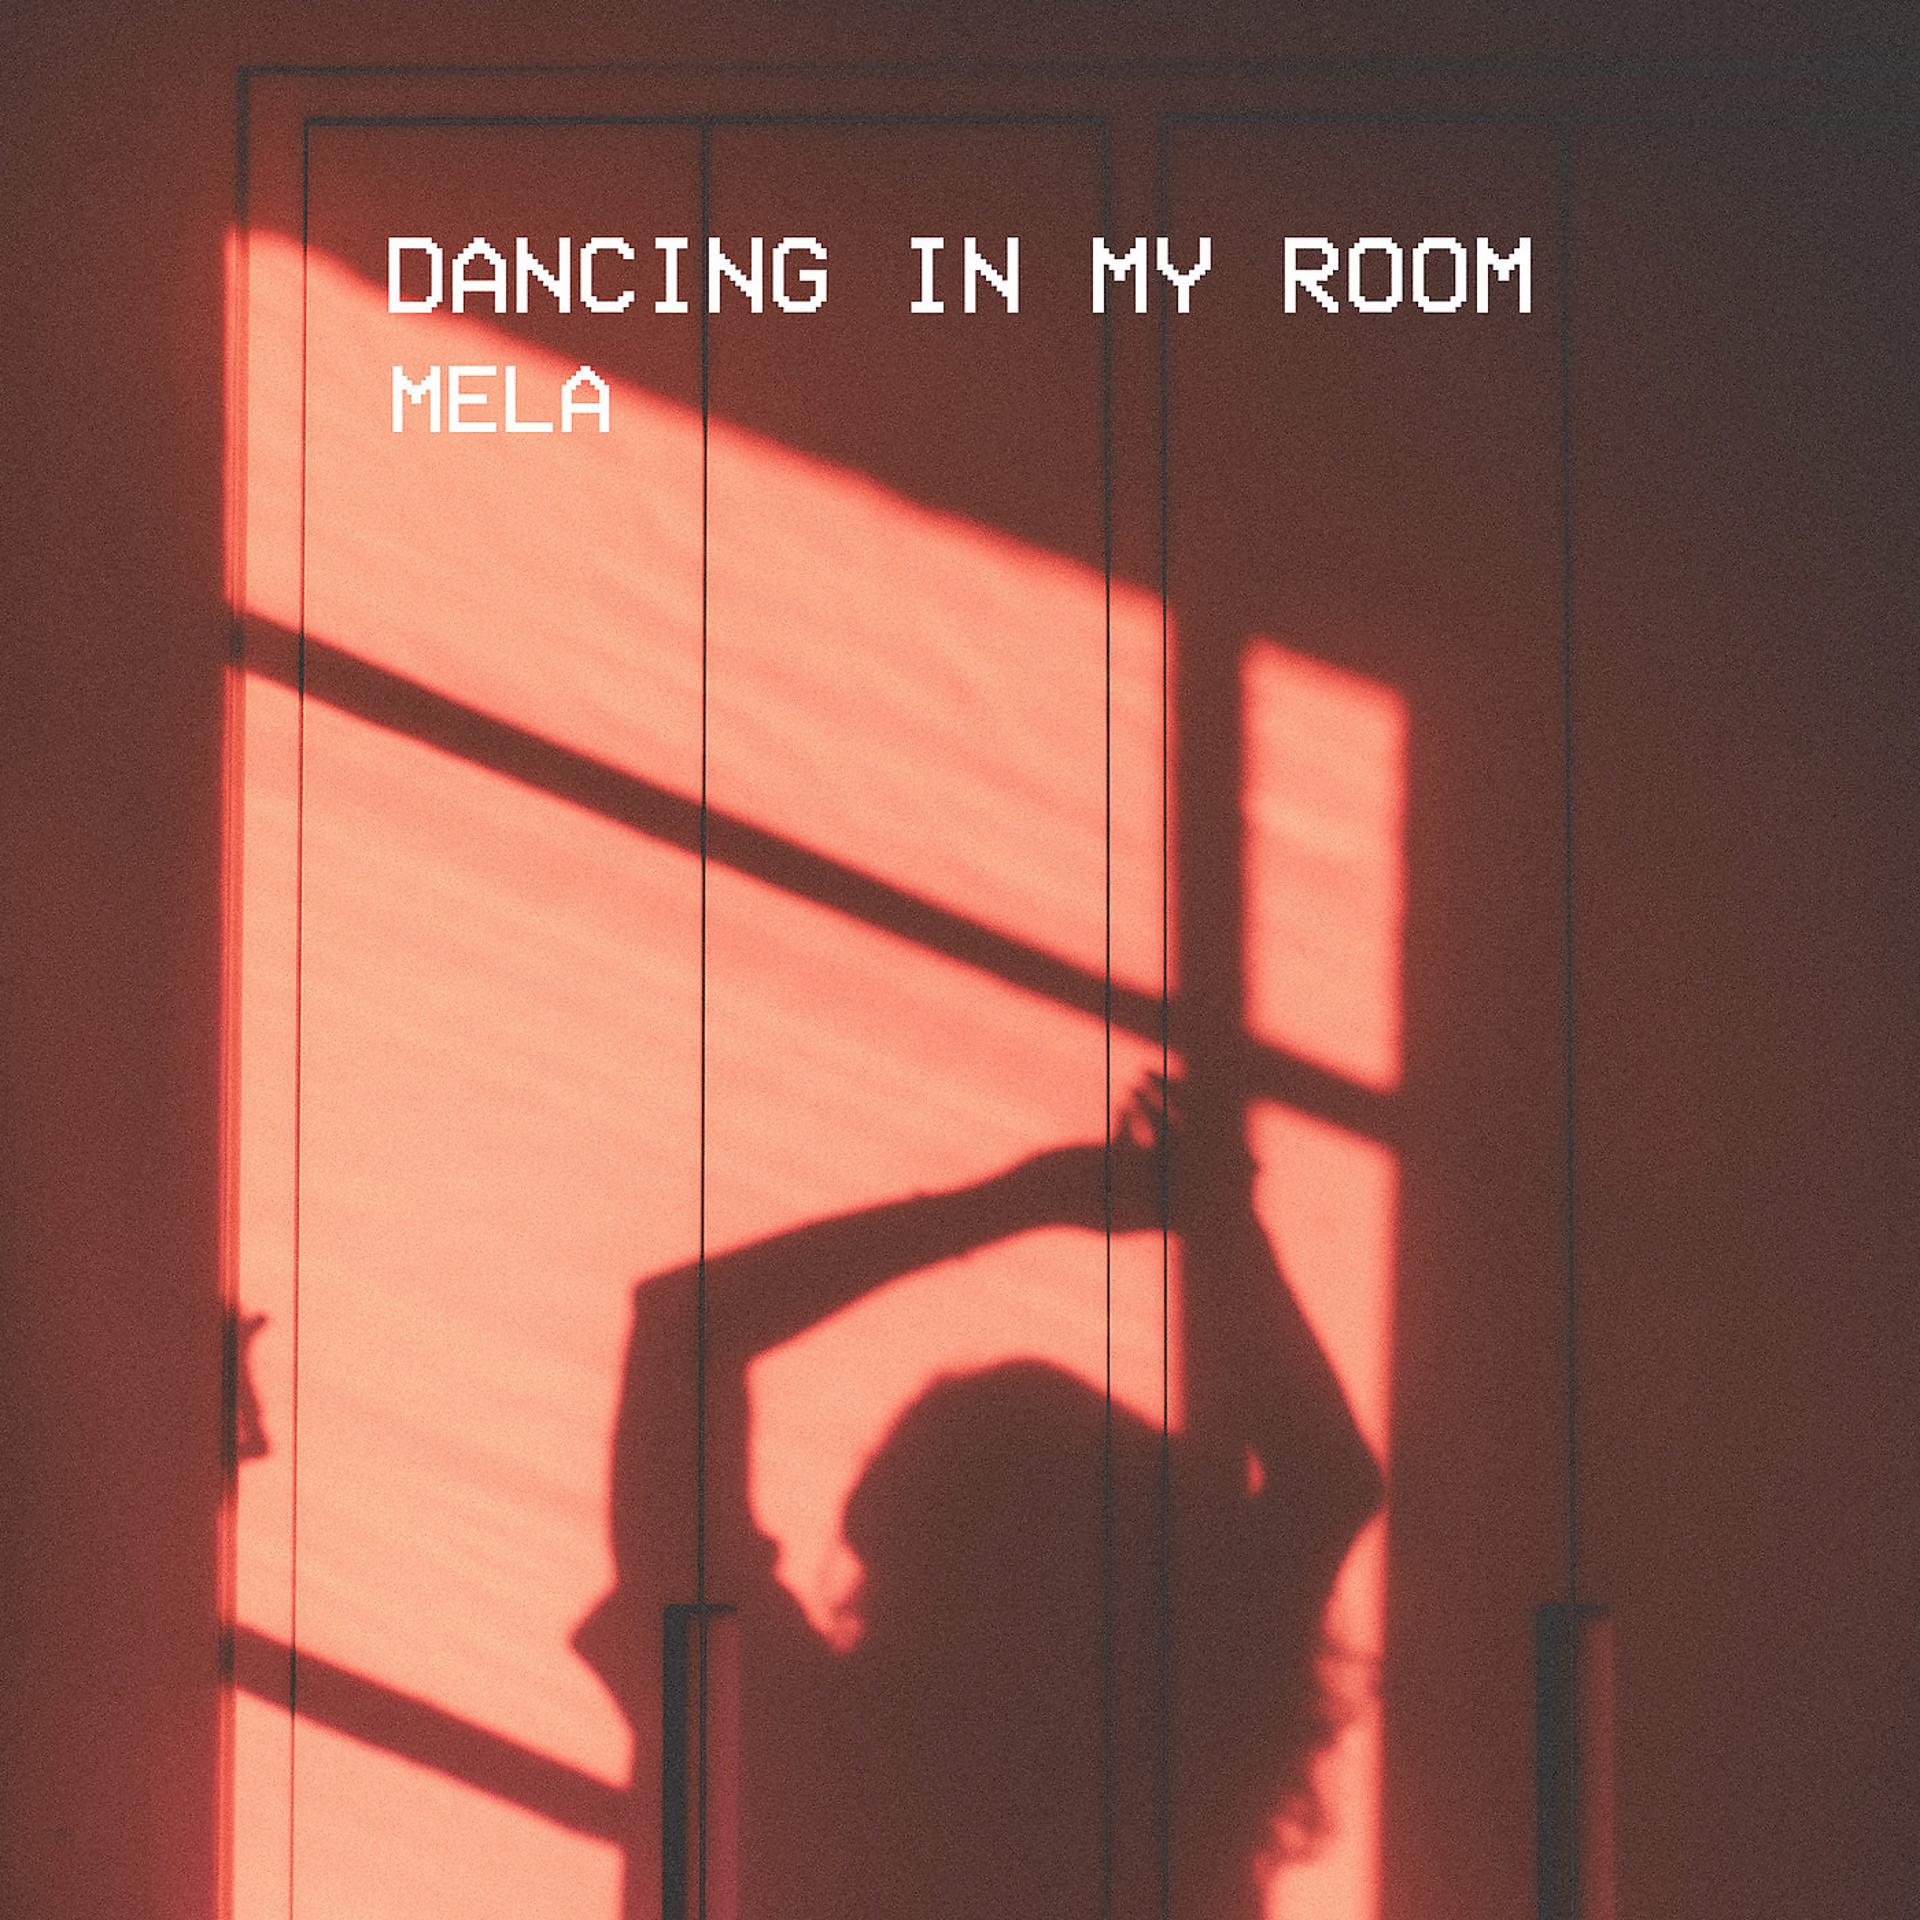 Dancing in my Room обложка. Dancing in my Room 347aidan обложка. Обложка для трека Dancing in my Room. 347aidan Dancing in my Room Автор.